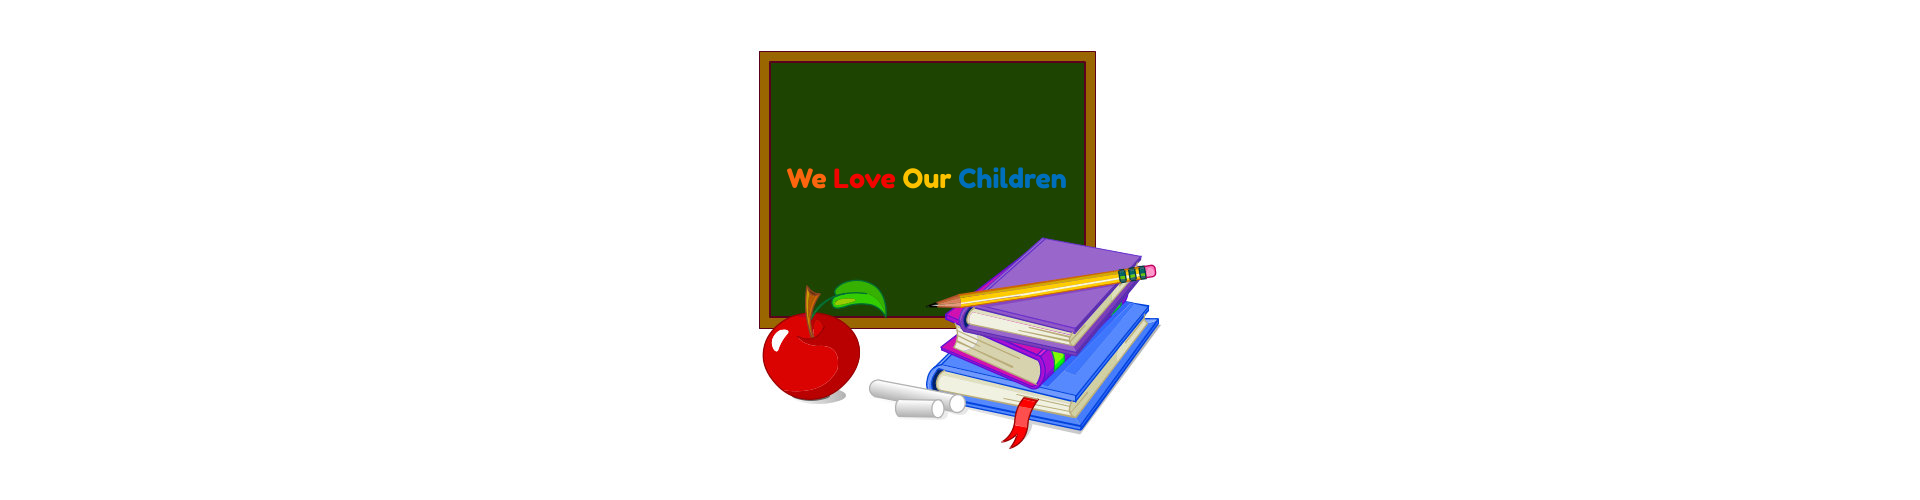 WE Love Our Children written on a blackboard vexel image